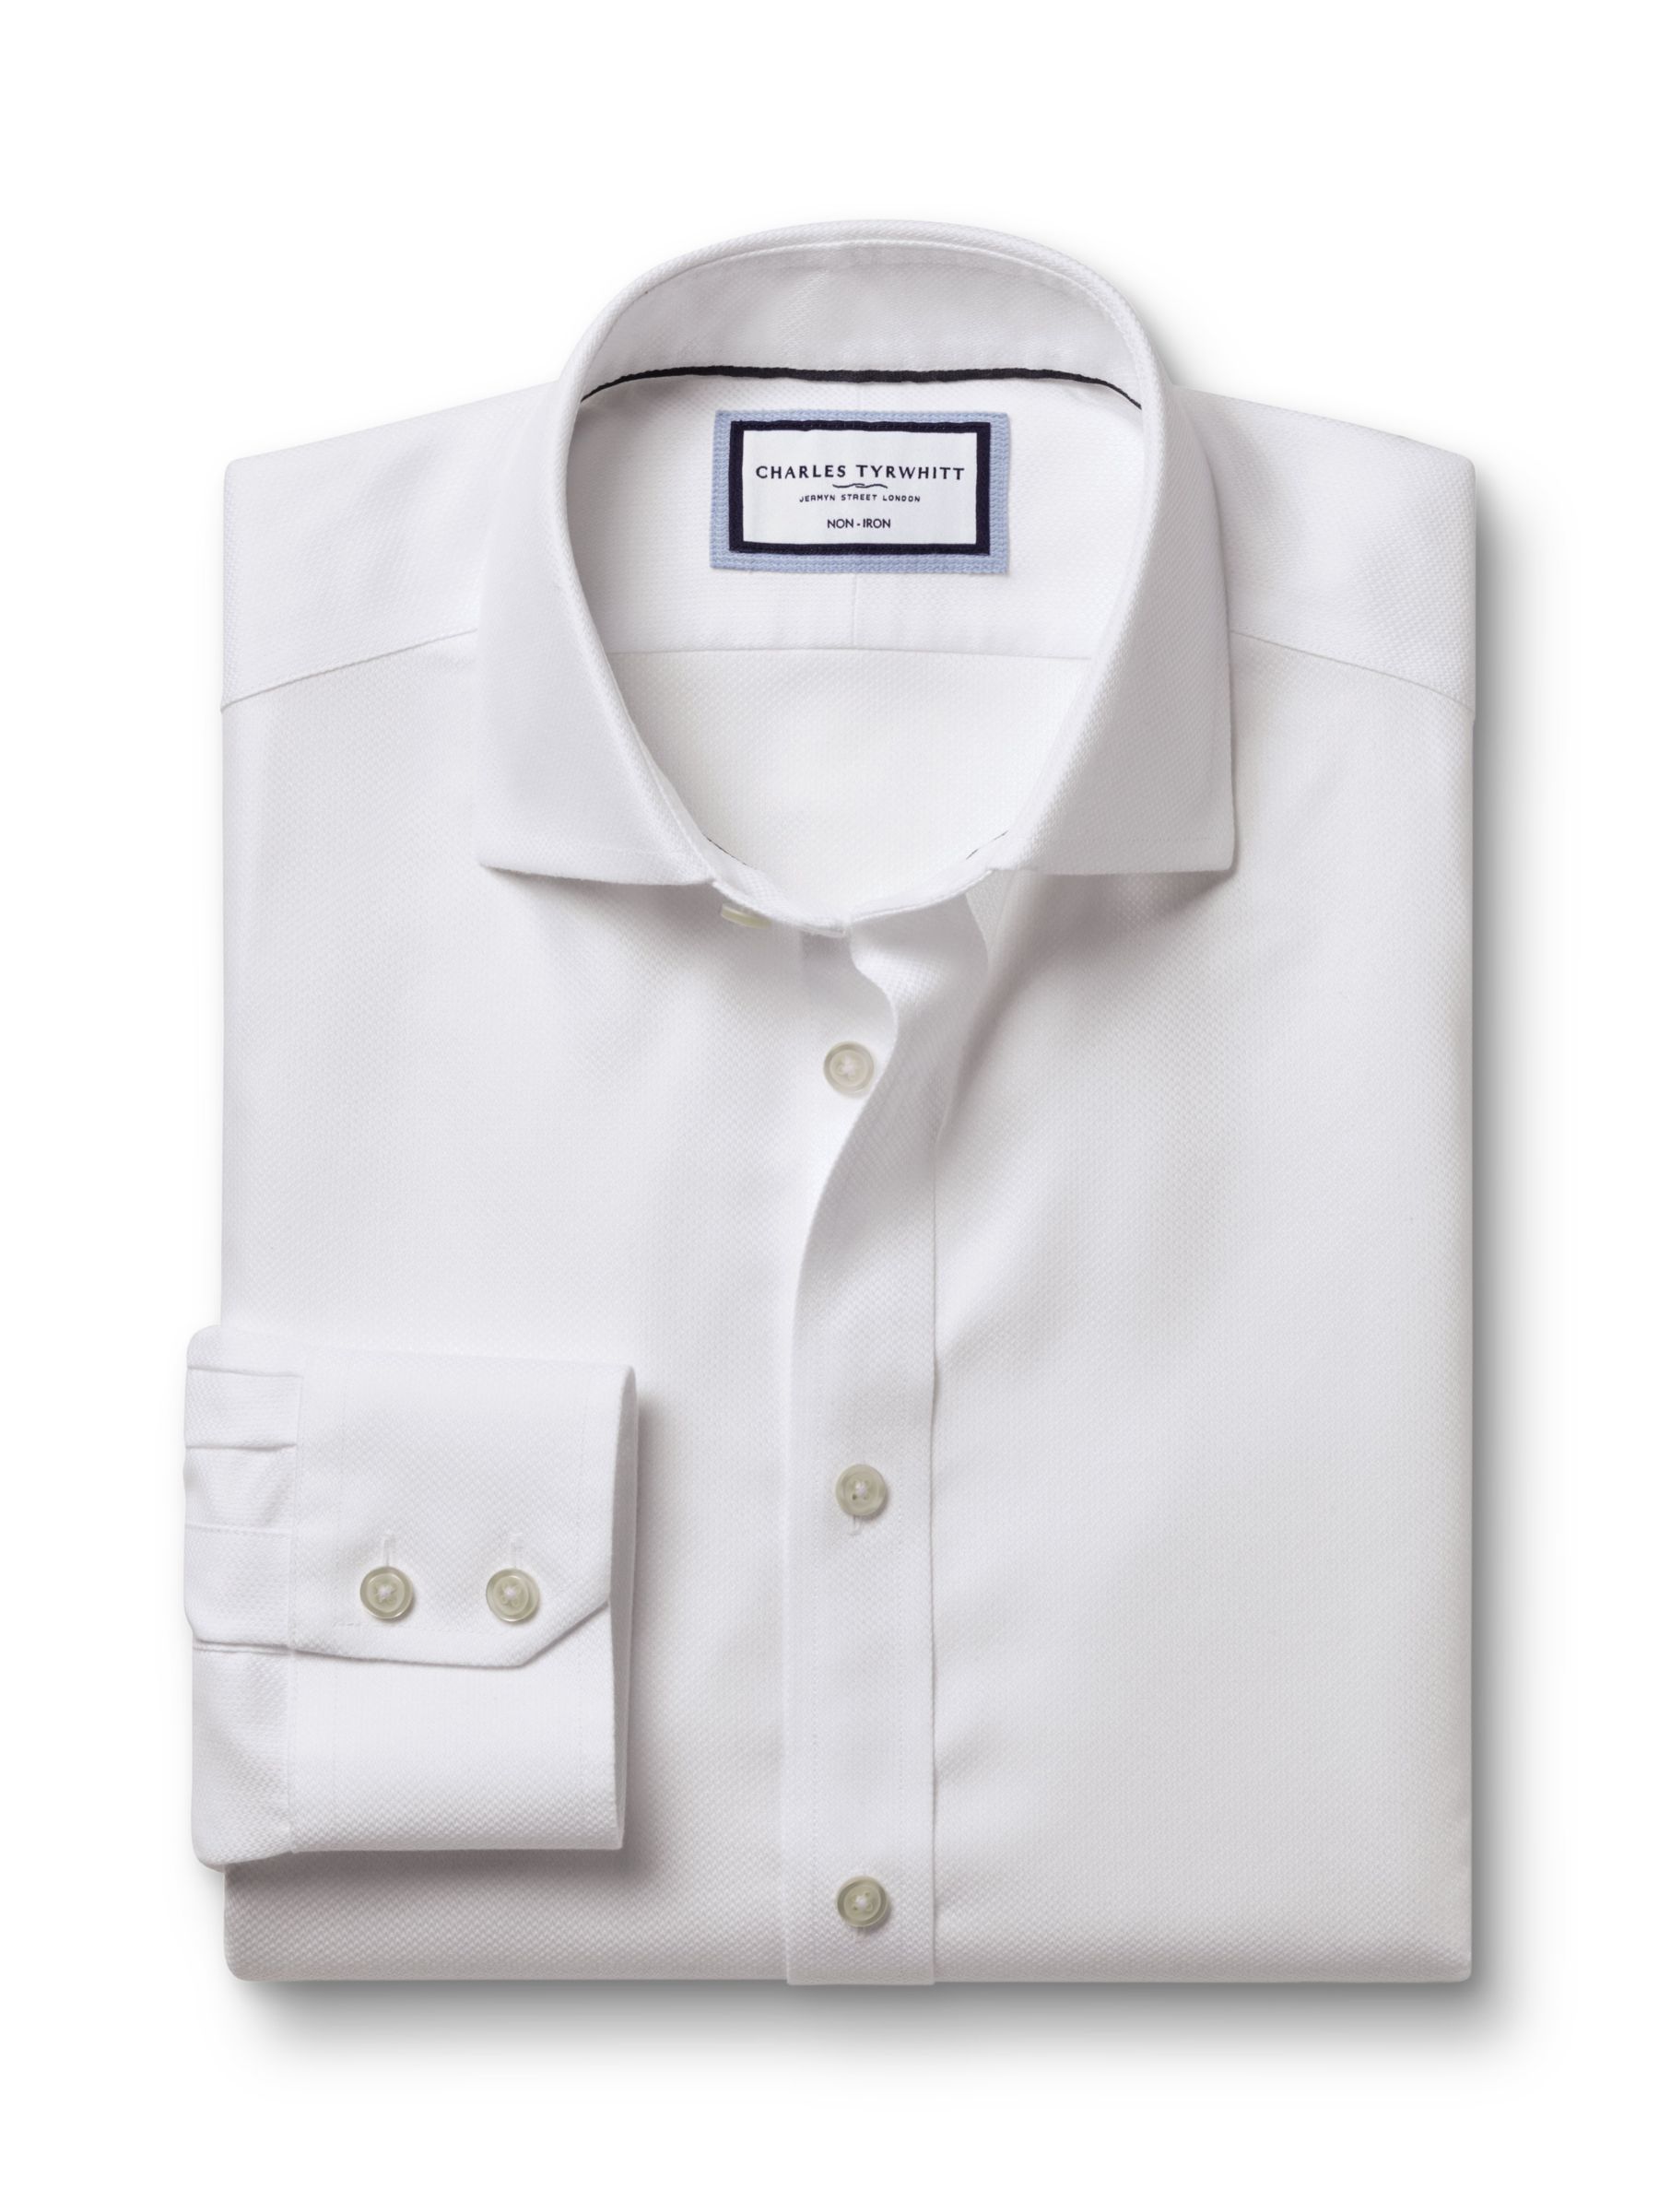 Charles Tyrwhitt Non-Iron Mayfair Textured Dobby Weave Shirt, White, 14.5